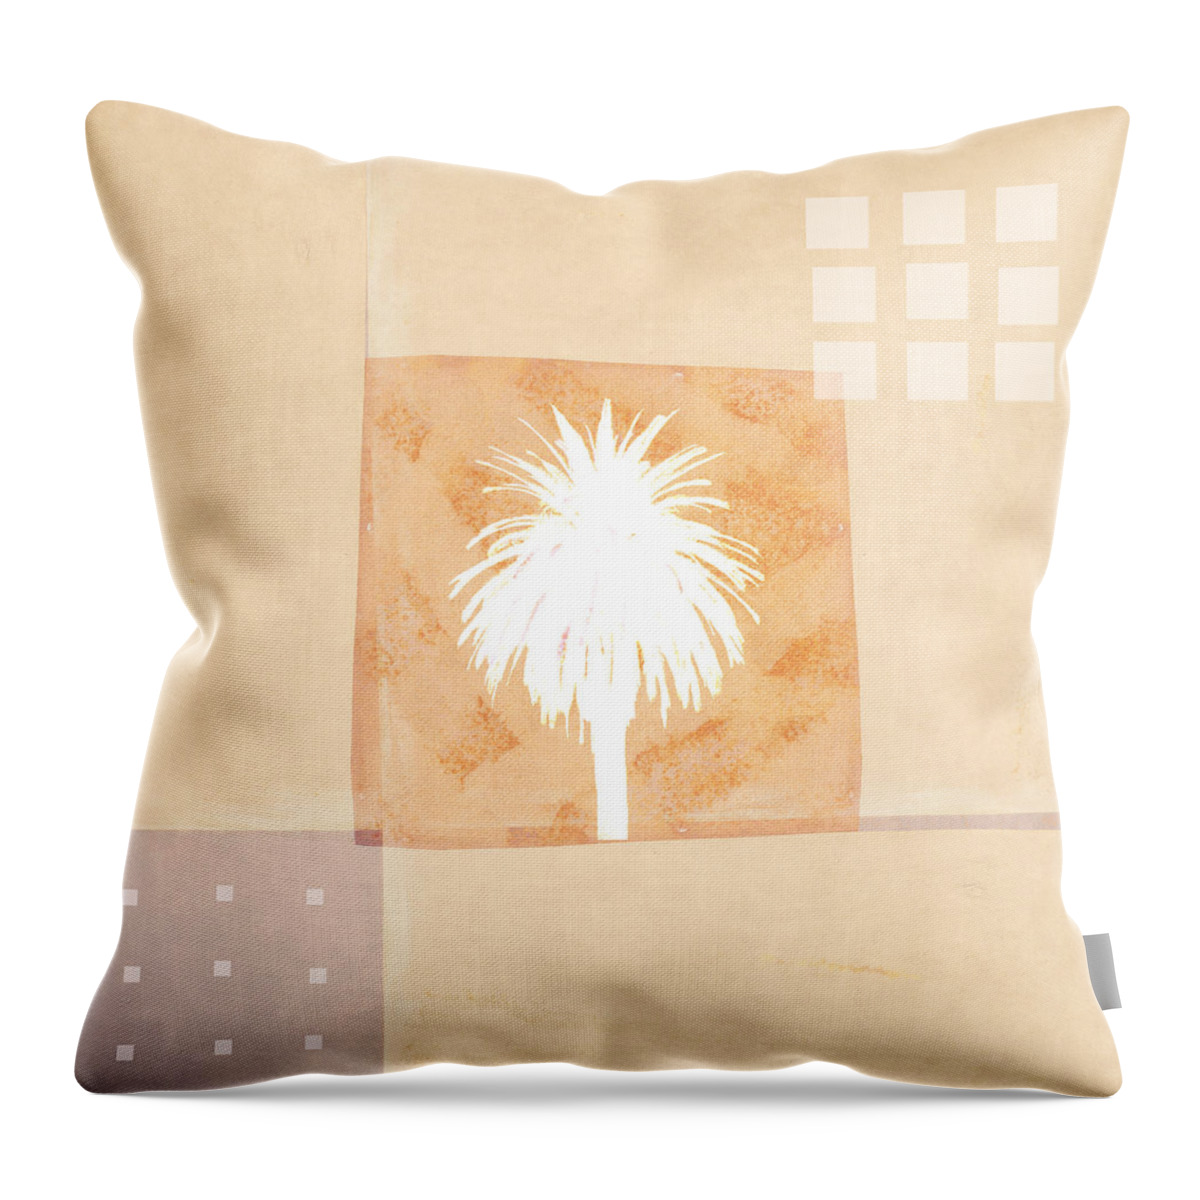 Desert Throw Pillow featuring the photograph Desert Windows by Carol Leigh